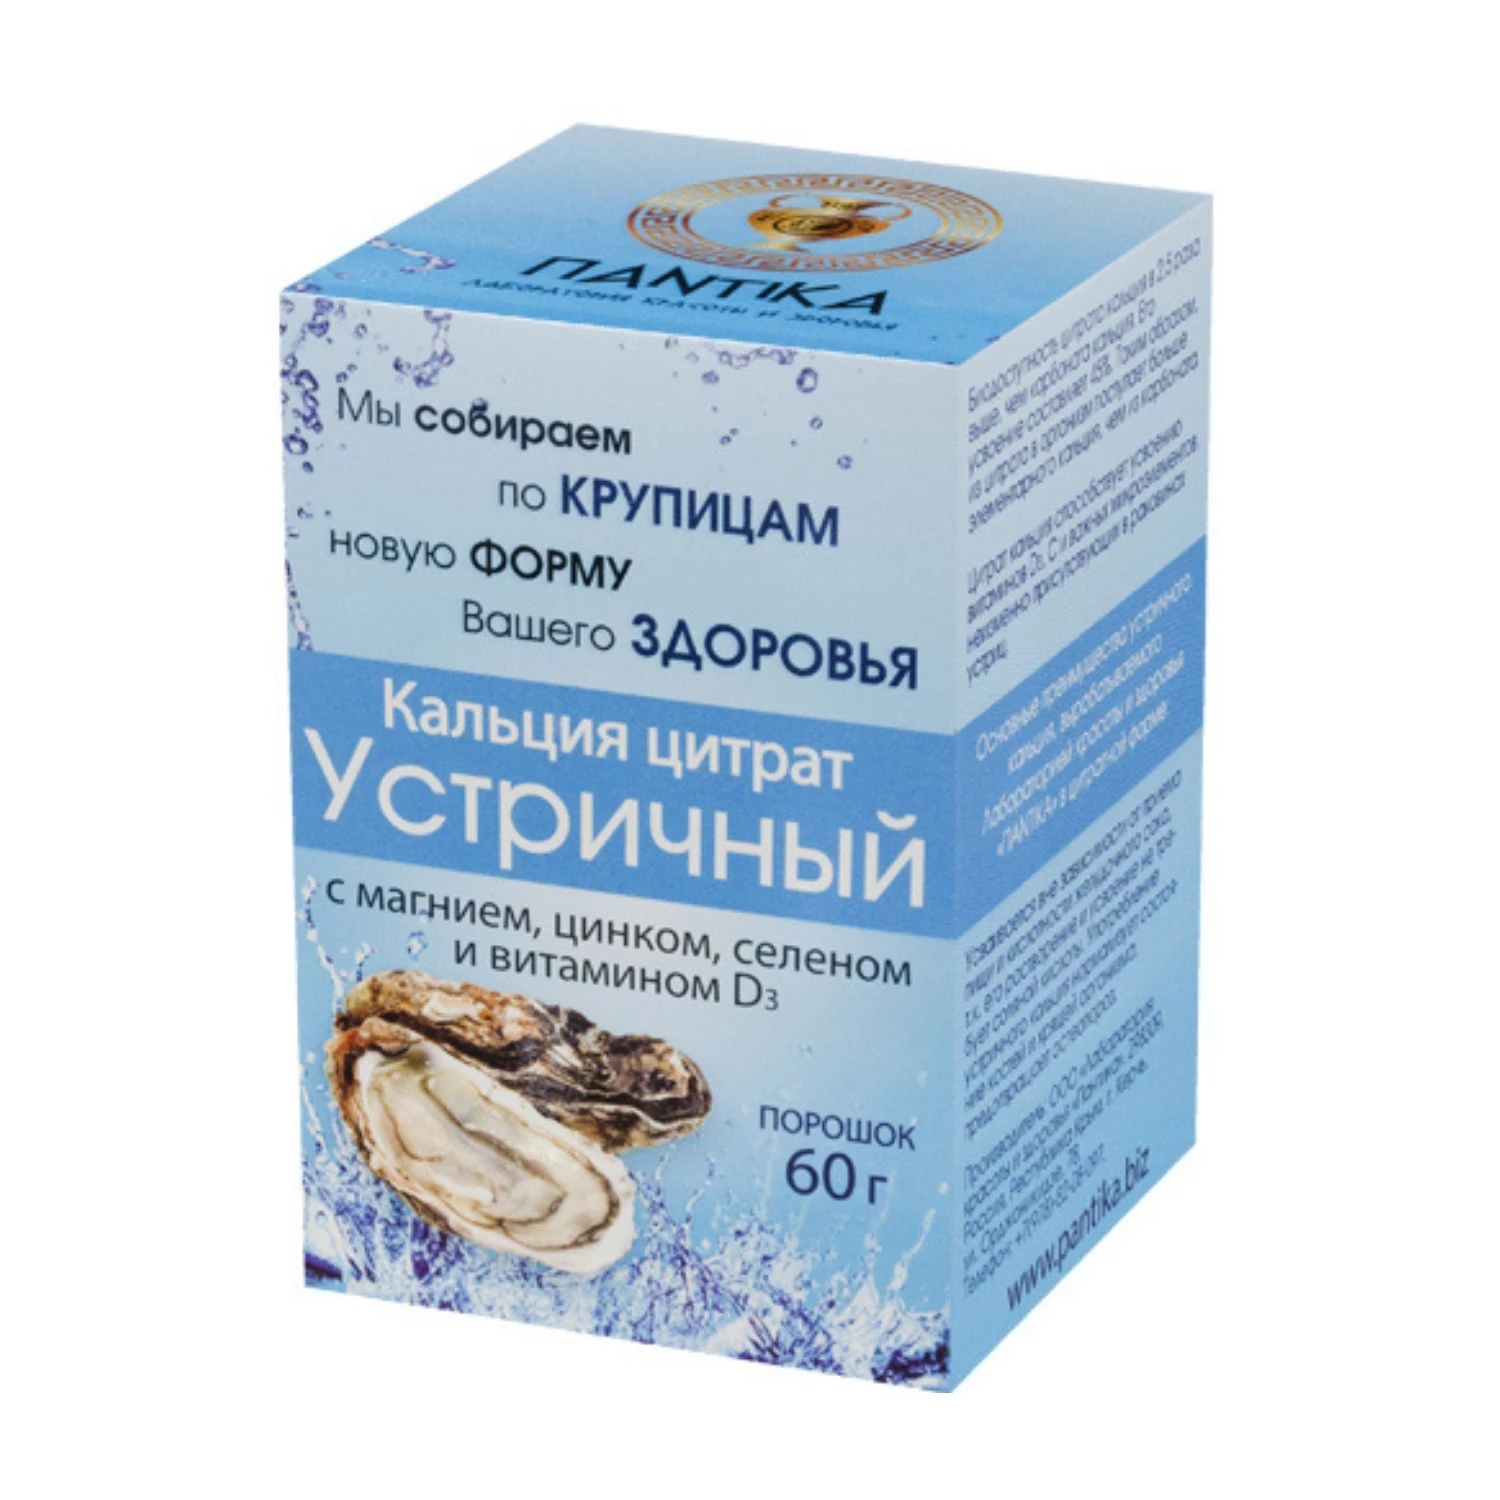 Кальция цитрат с витамином Д3 Крымский фото 2